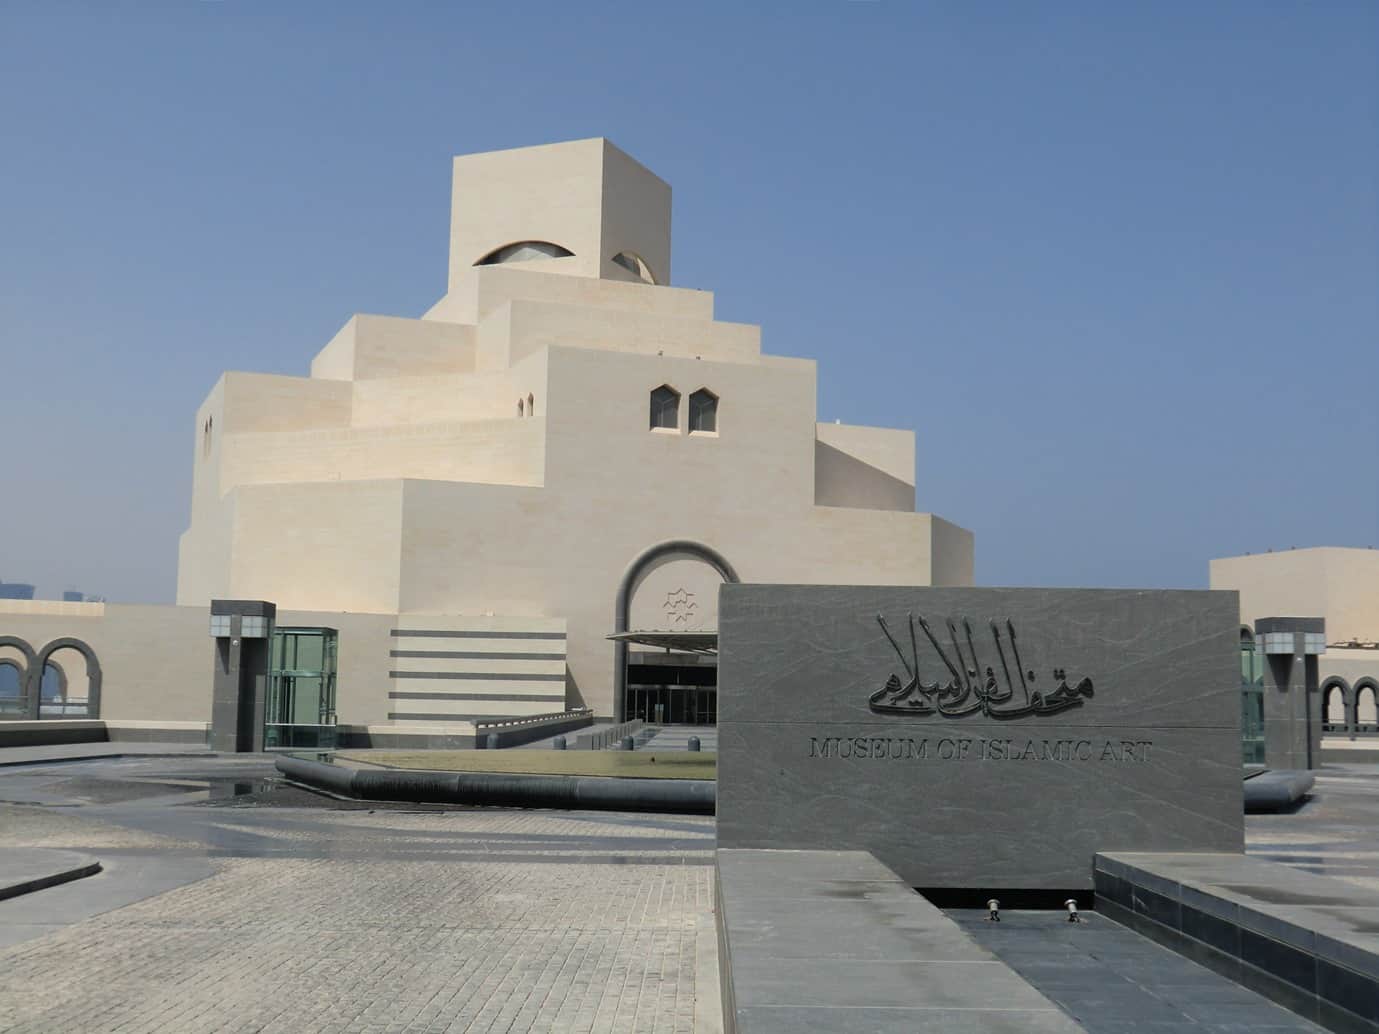 UNAC delegation visits museums, Souq Waqif